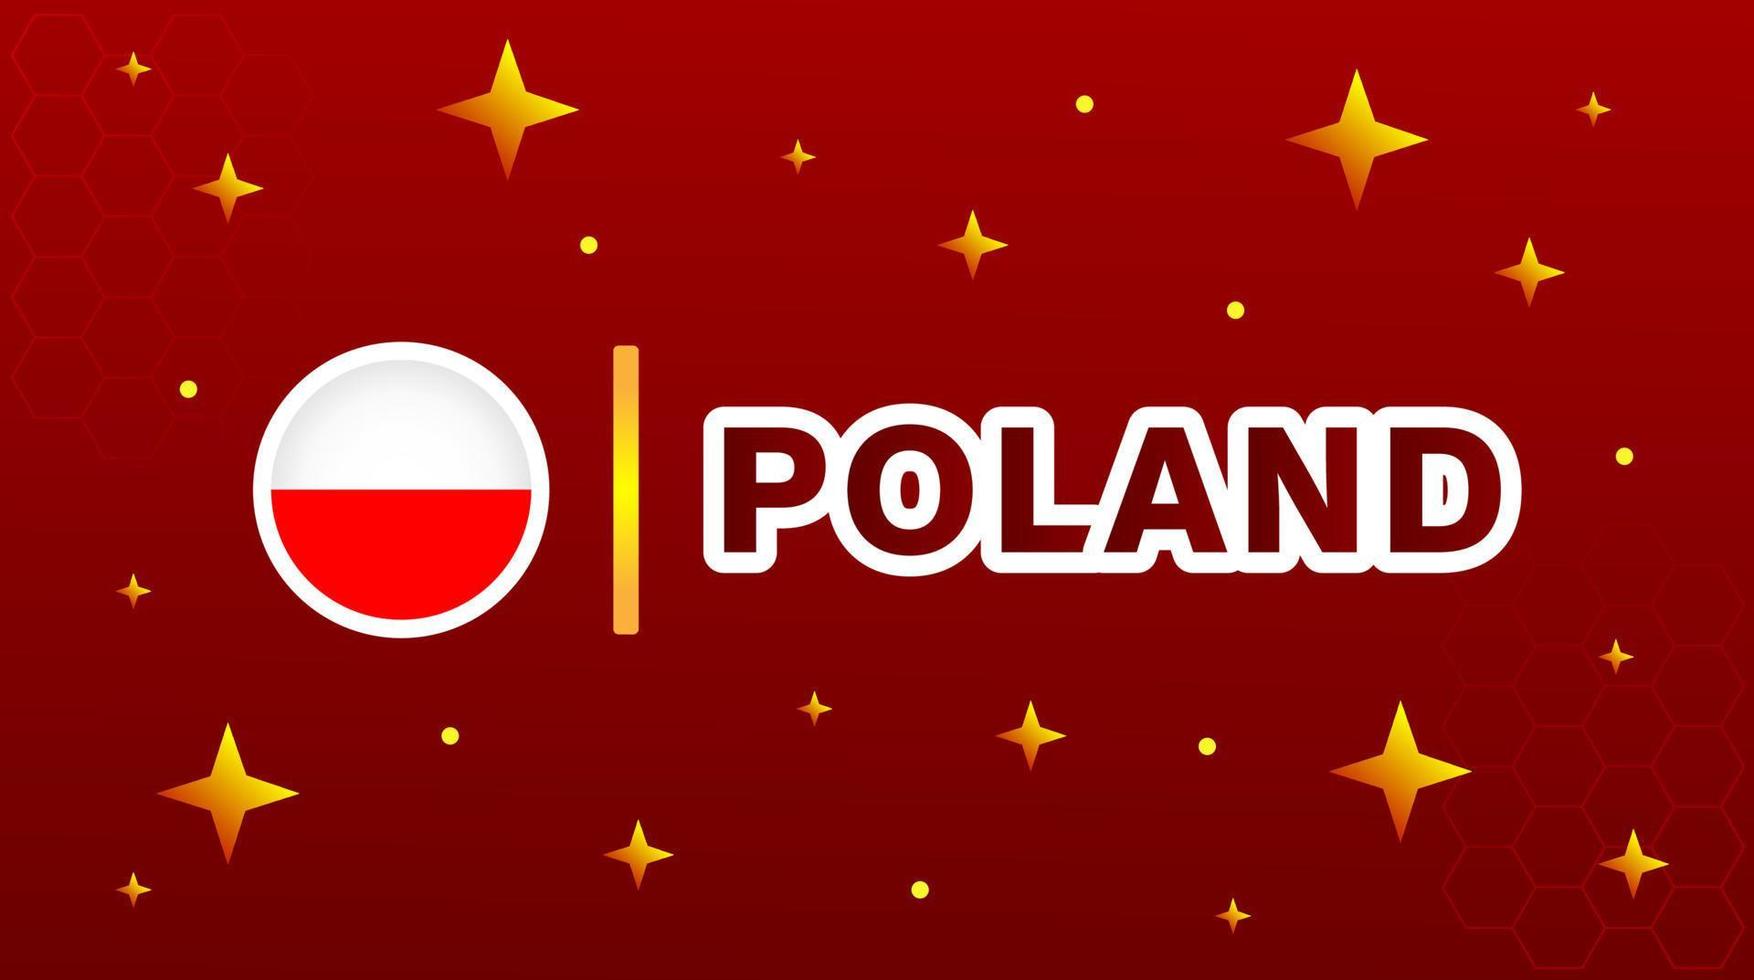 bandera de polonia con estrellas sobre fondo marrón rojo. vector